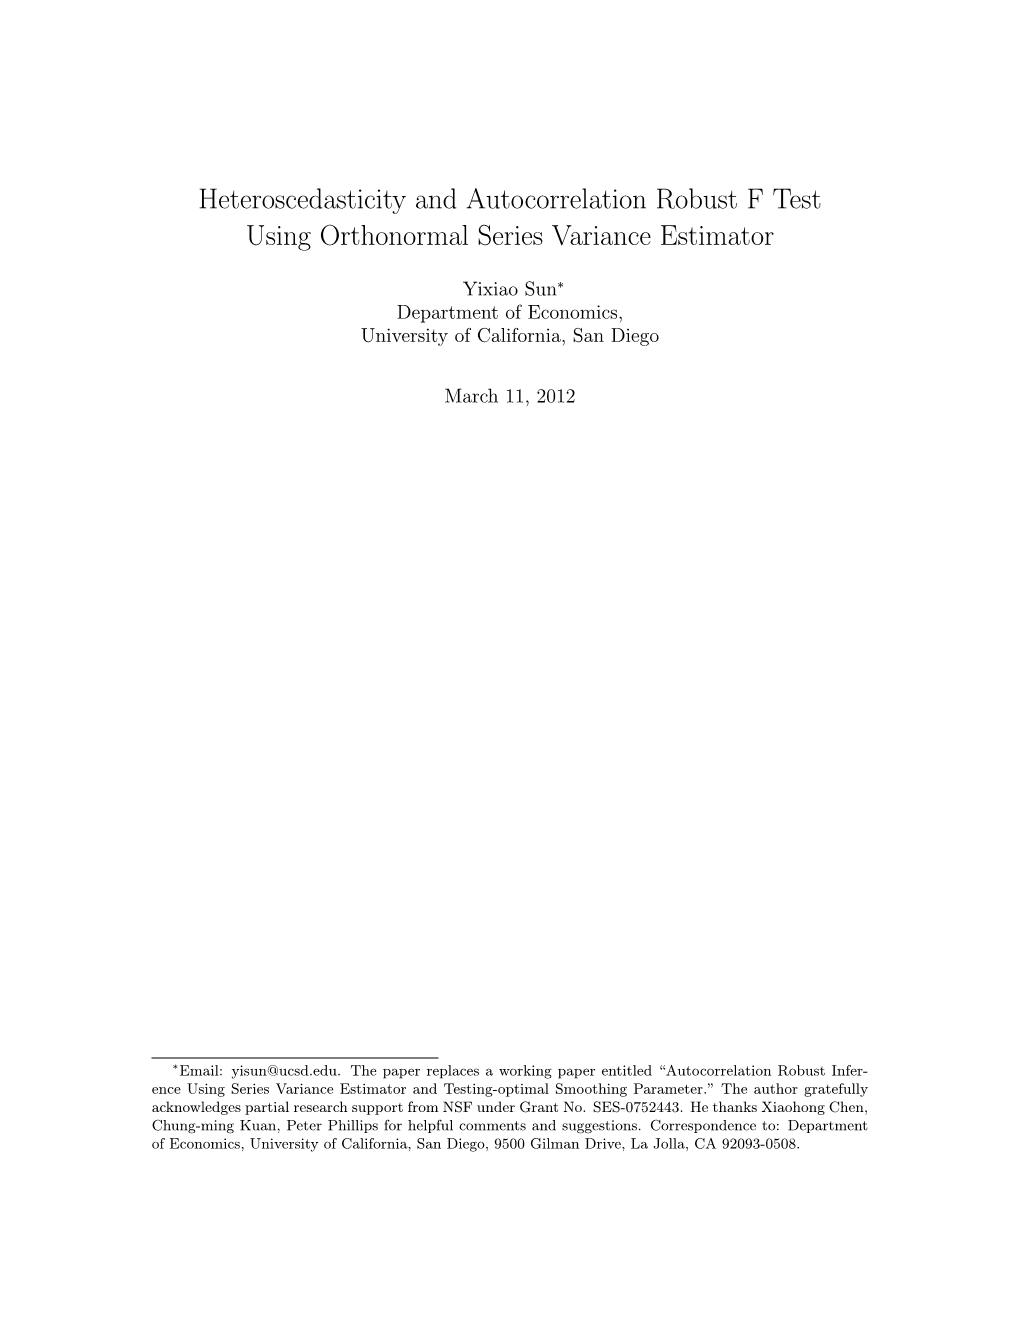 Heteroscedasticity and Autocorrelation Robust F Test Using Orthonormal Series Variance Estimator